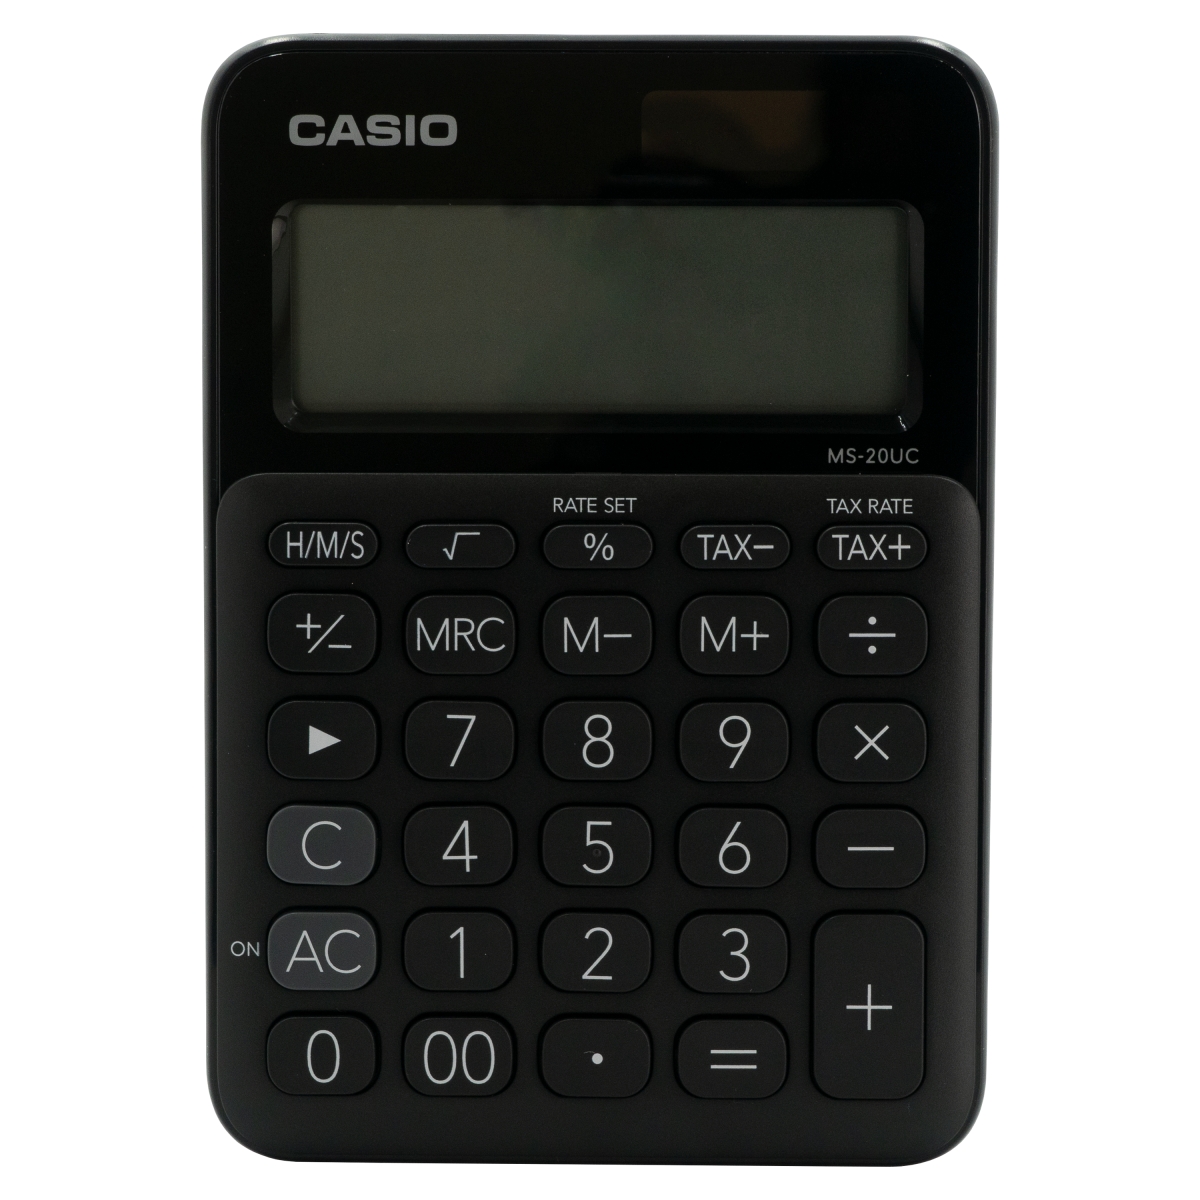 Calculadora de escritorio negra CASIO pa Conversión de h/m/s, cálculo de impuestos, cálculo de cambio, porcentaje regular, retroceso, marcador de coma cada 3 dígitos, key rollover: entrada de datos alta velocidad, alimentación pila + solar, dimensiones 22.1 x 104.5 x 149.5 mm                     ntalla larga de 12 dígitos               - MS-20UC-BK-S-EC